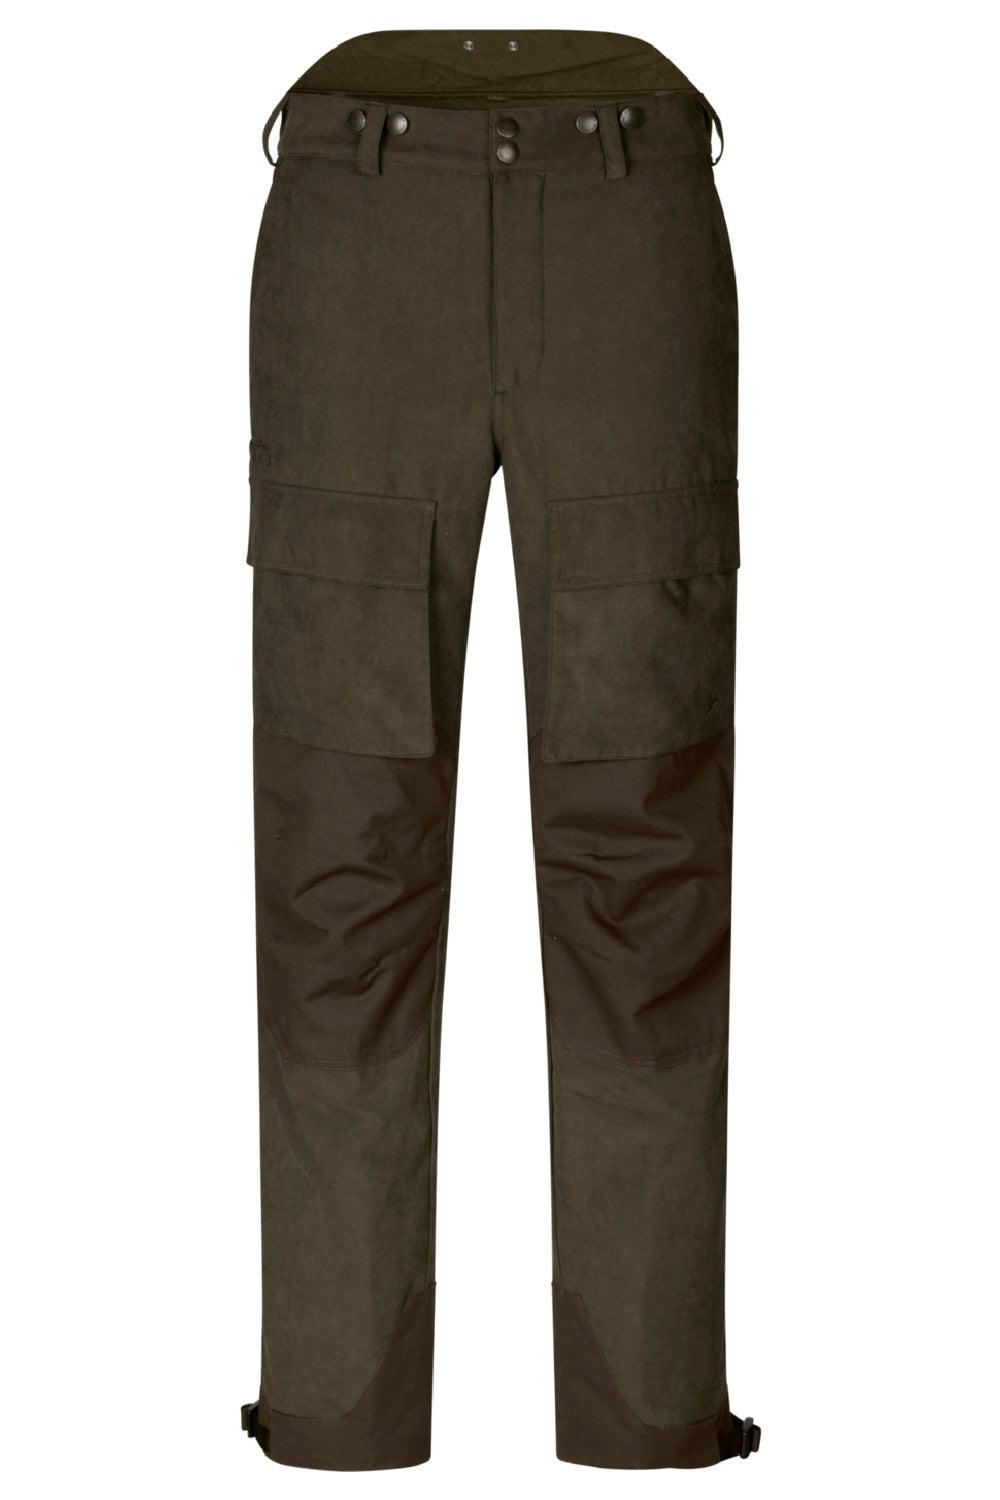 Seeland Helt II Waterproof Trousers